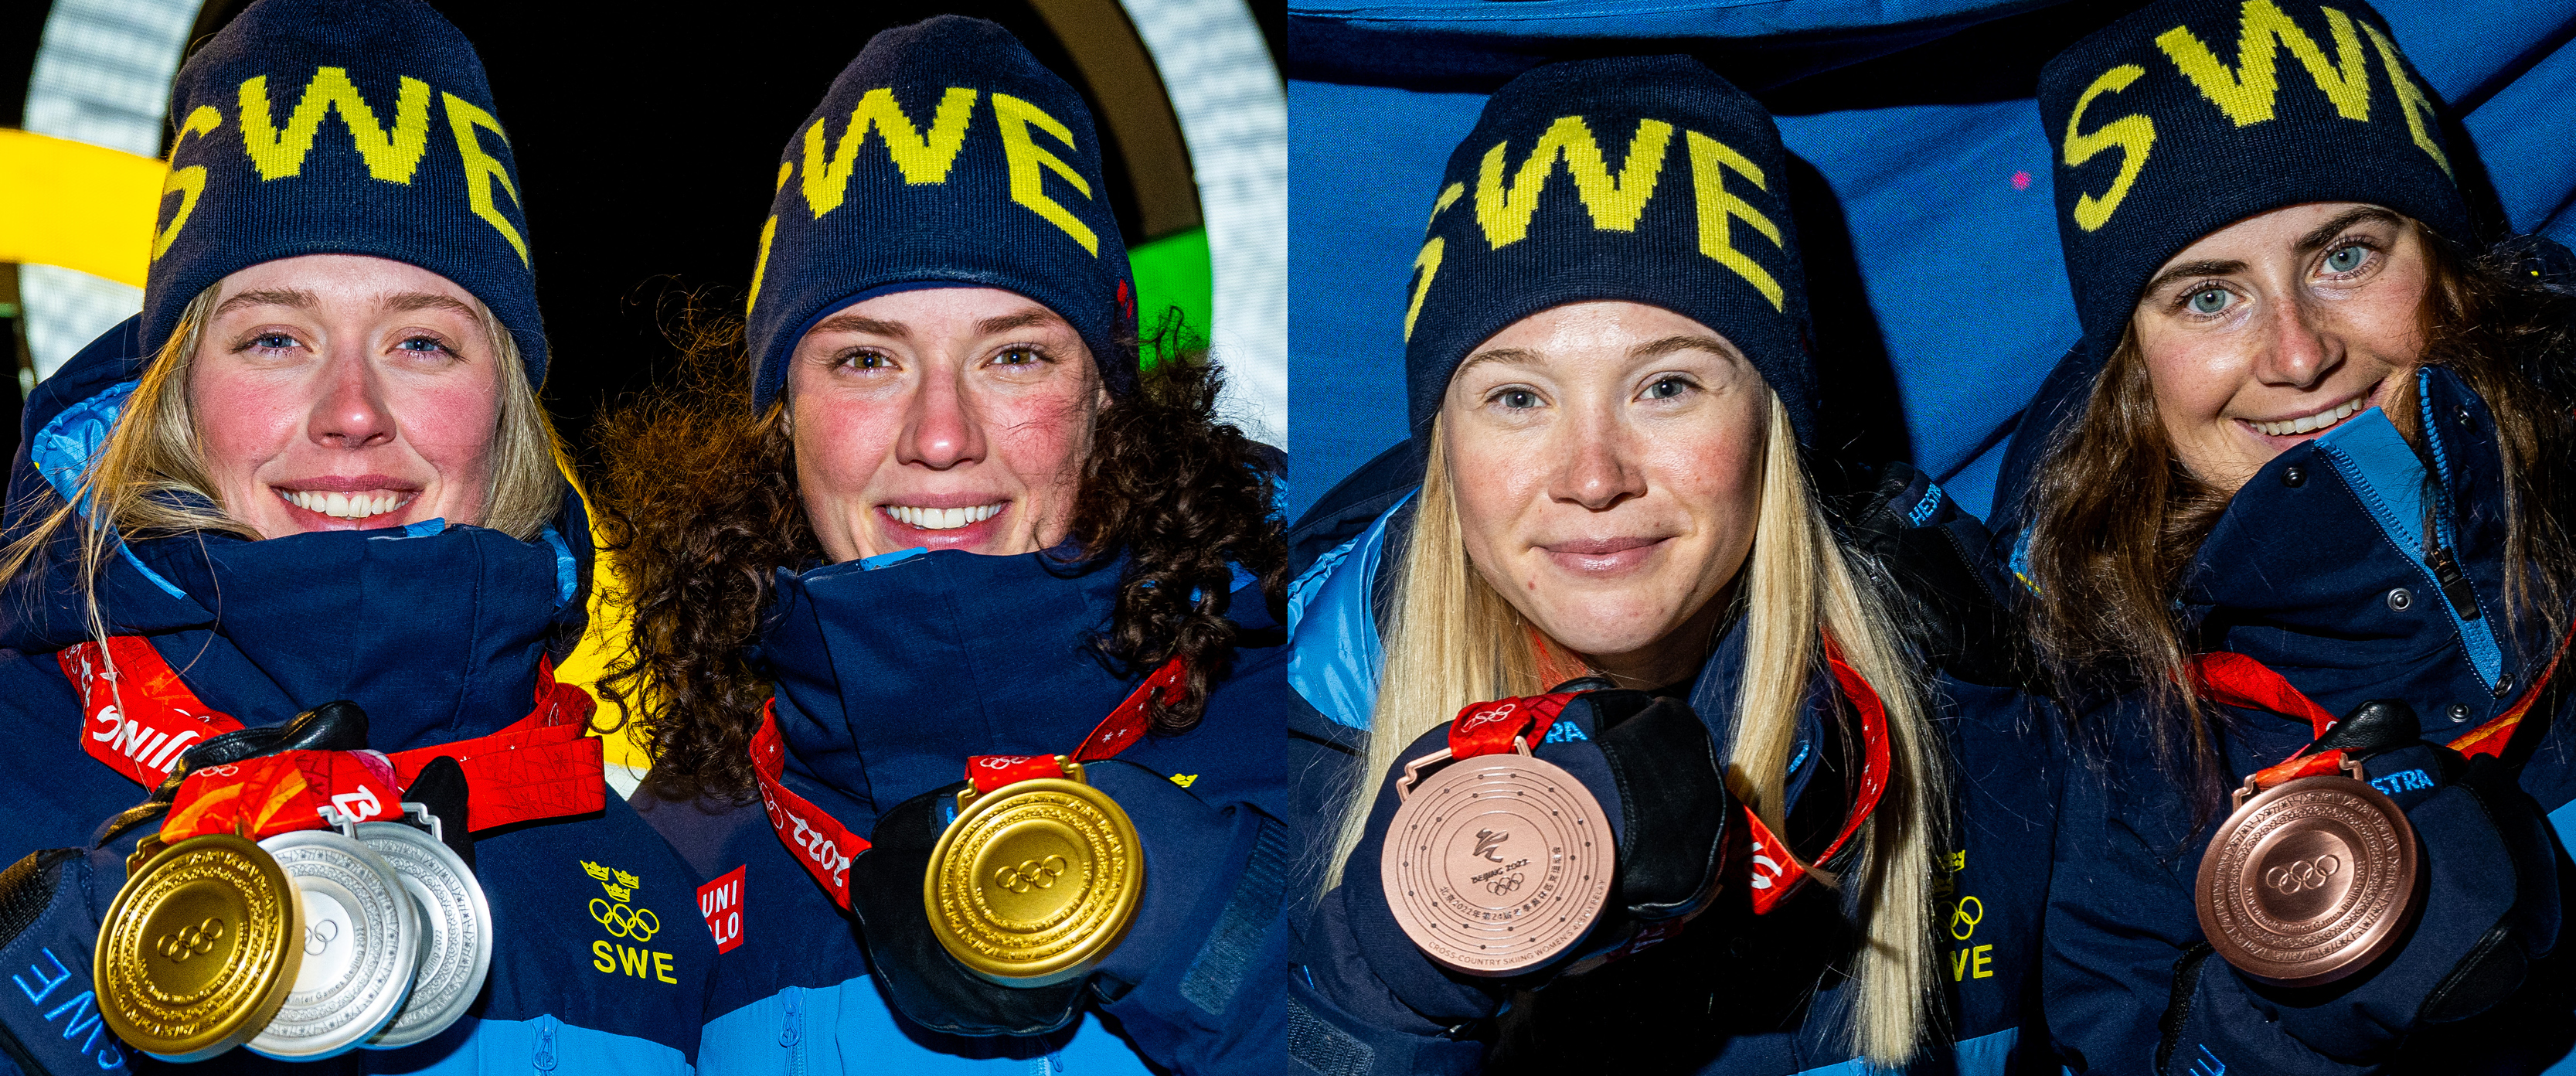 Piteås skidskyttar Elvira och Hanna Öberg och Piteås längdskidåkare Jonna Sundling och Ebba Andersson bjöd på en fantastisk idrottsfest under OS i Peking i Kina i februari.